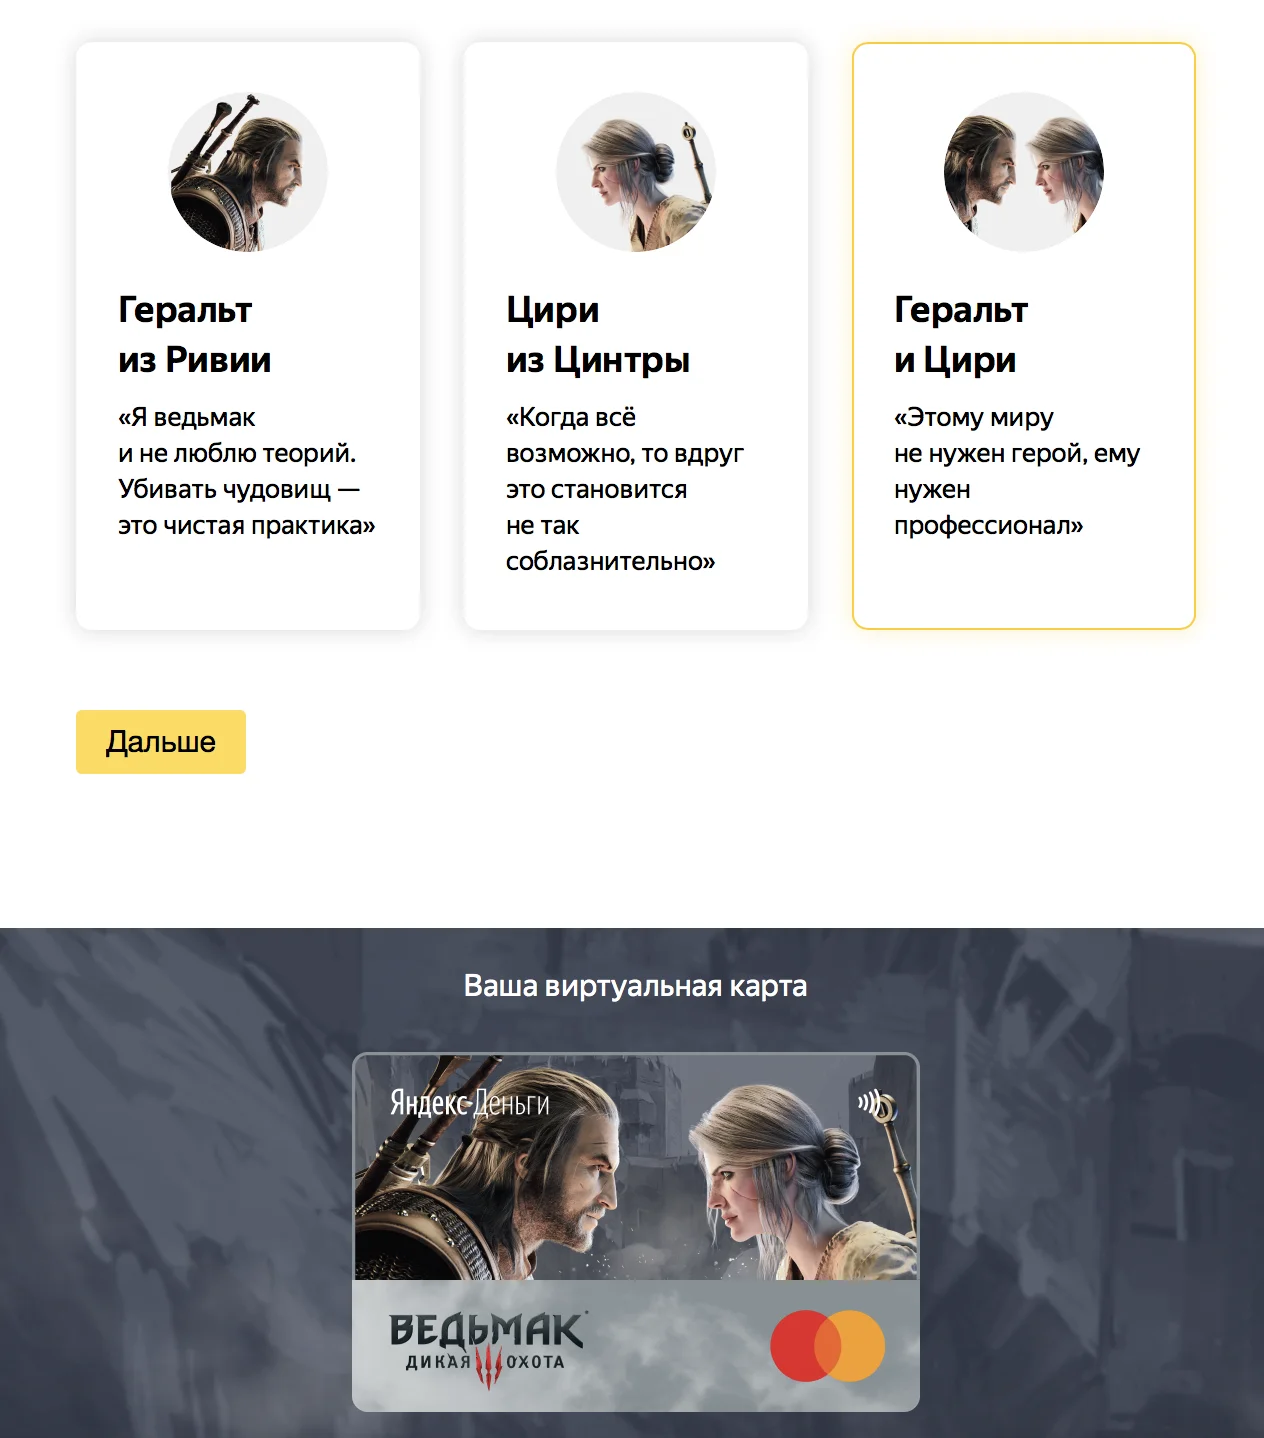 Ведьмак на банковских картах: Яндекс.Деньги выпустил эксклюзивные кредитки - фото 1